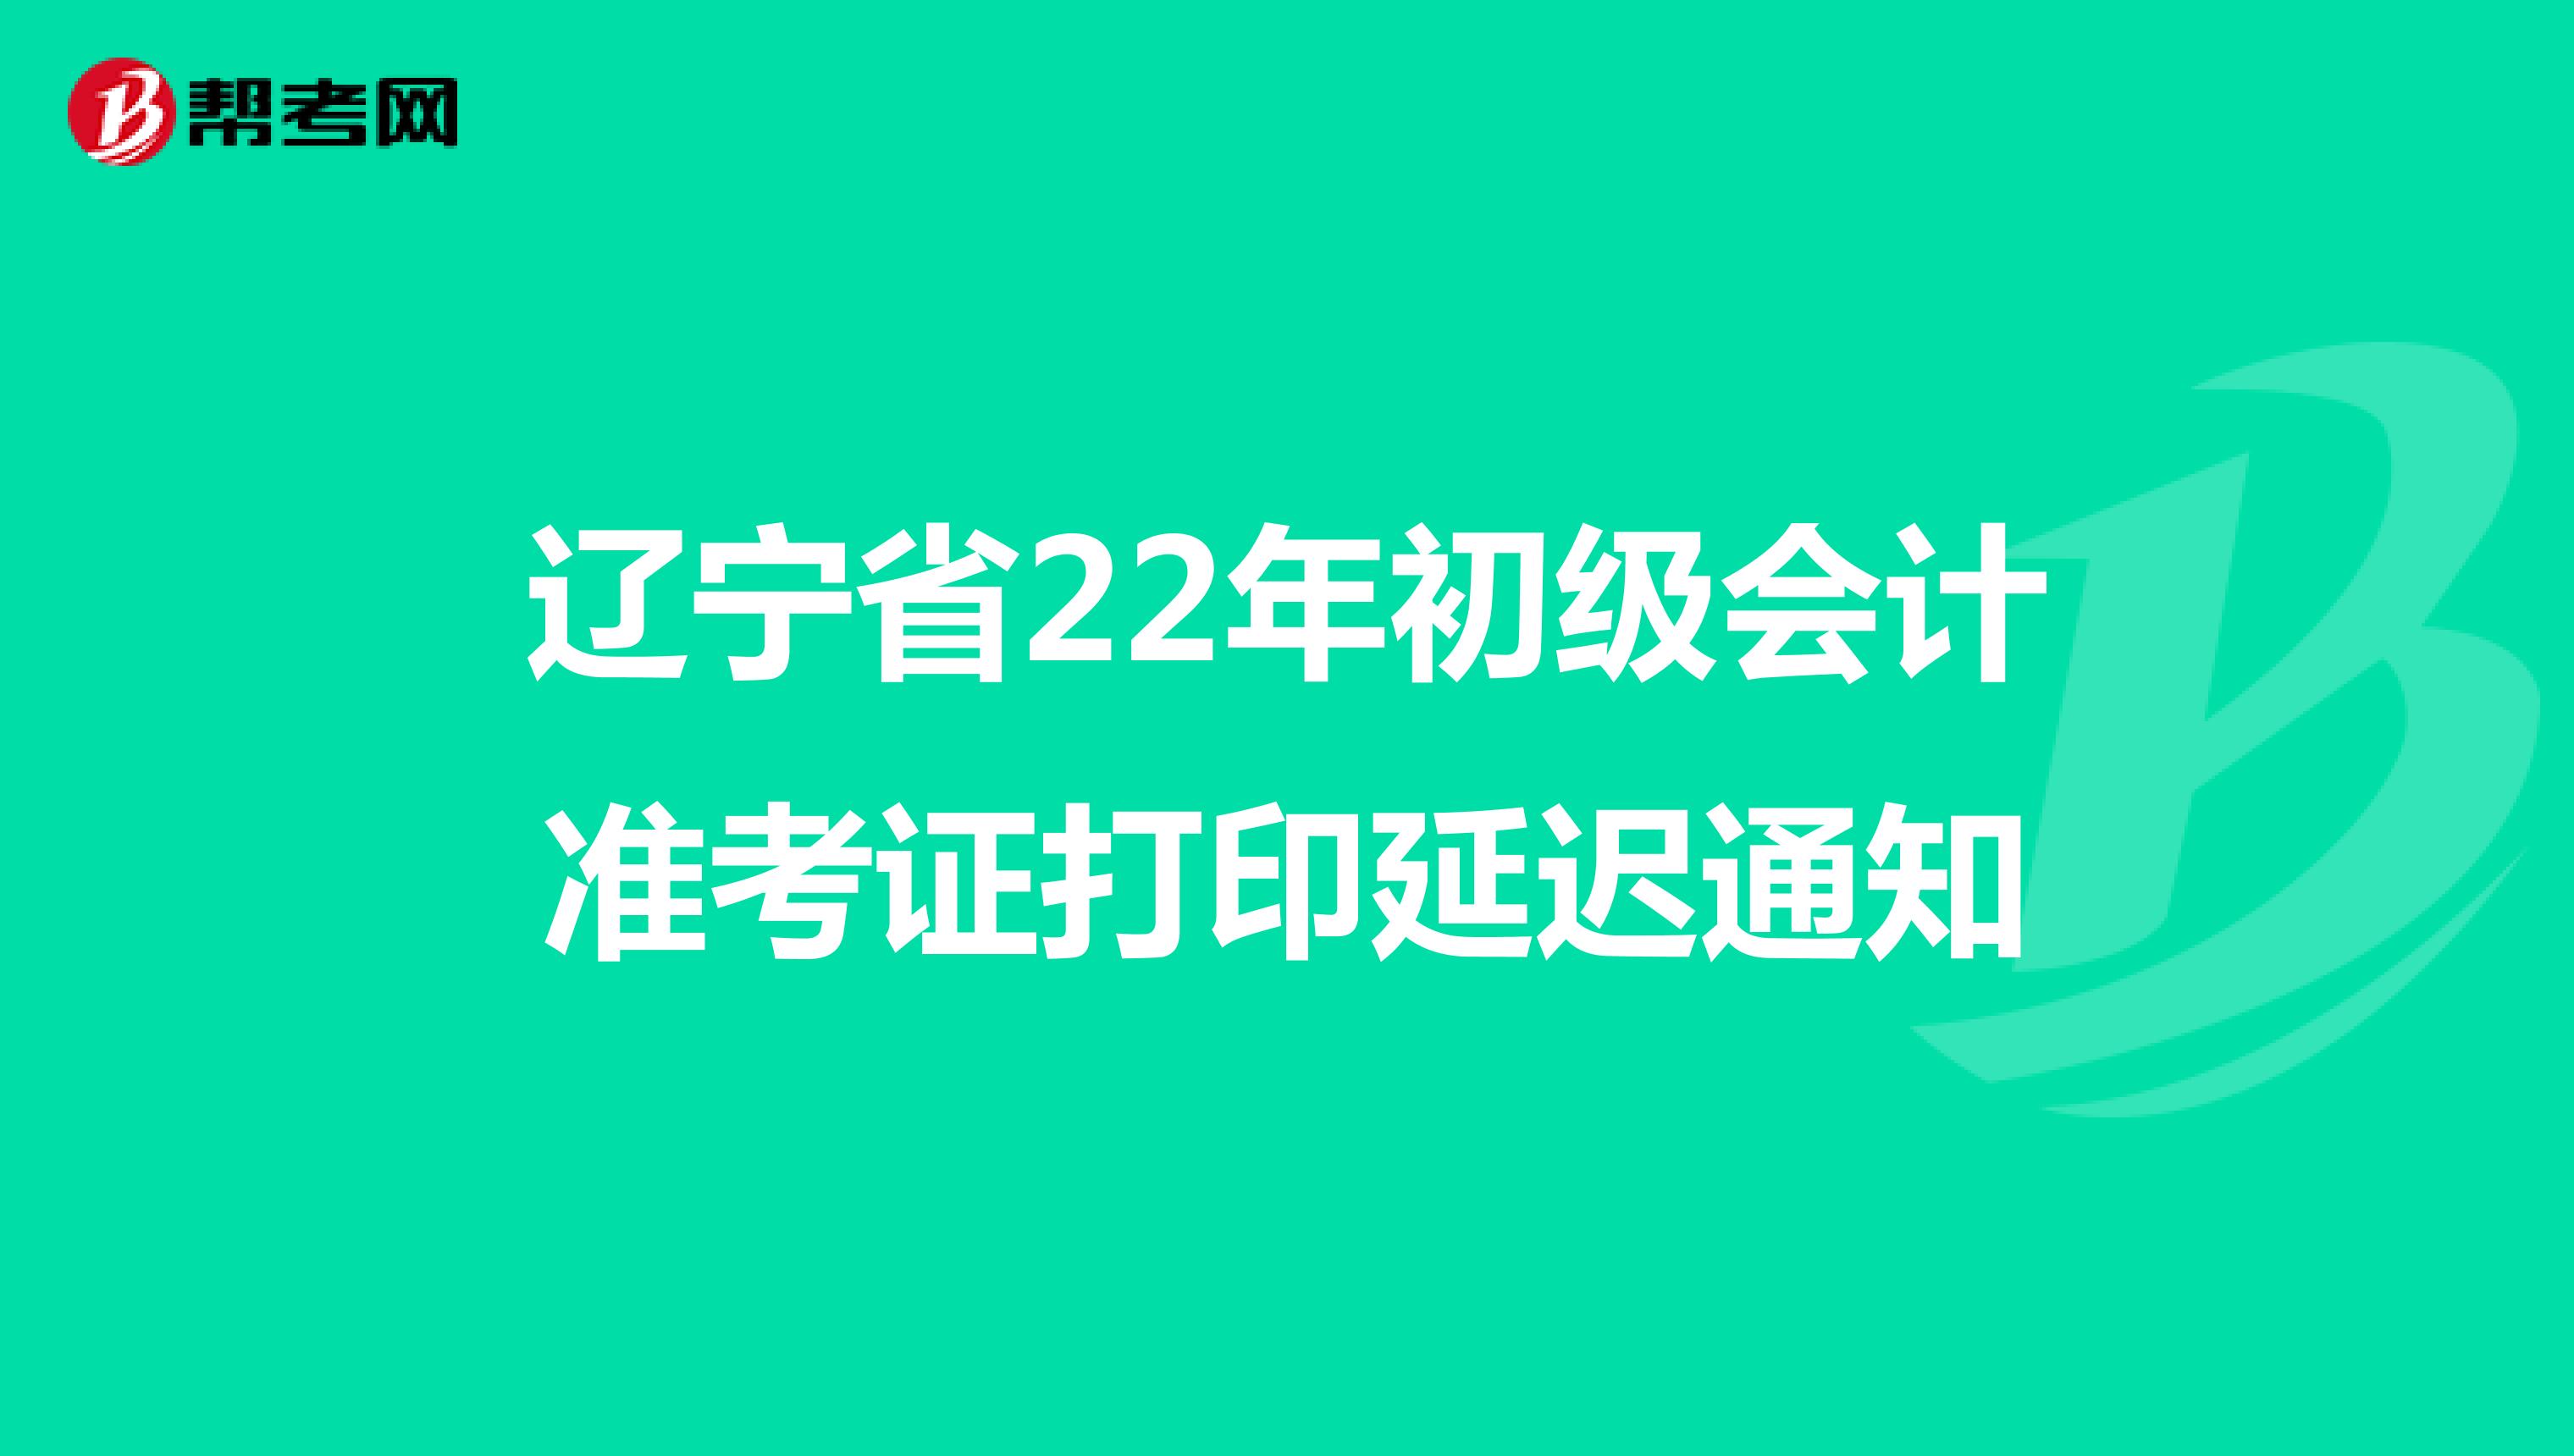 辽宁省22年初级会计准考证打印延迟通知